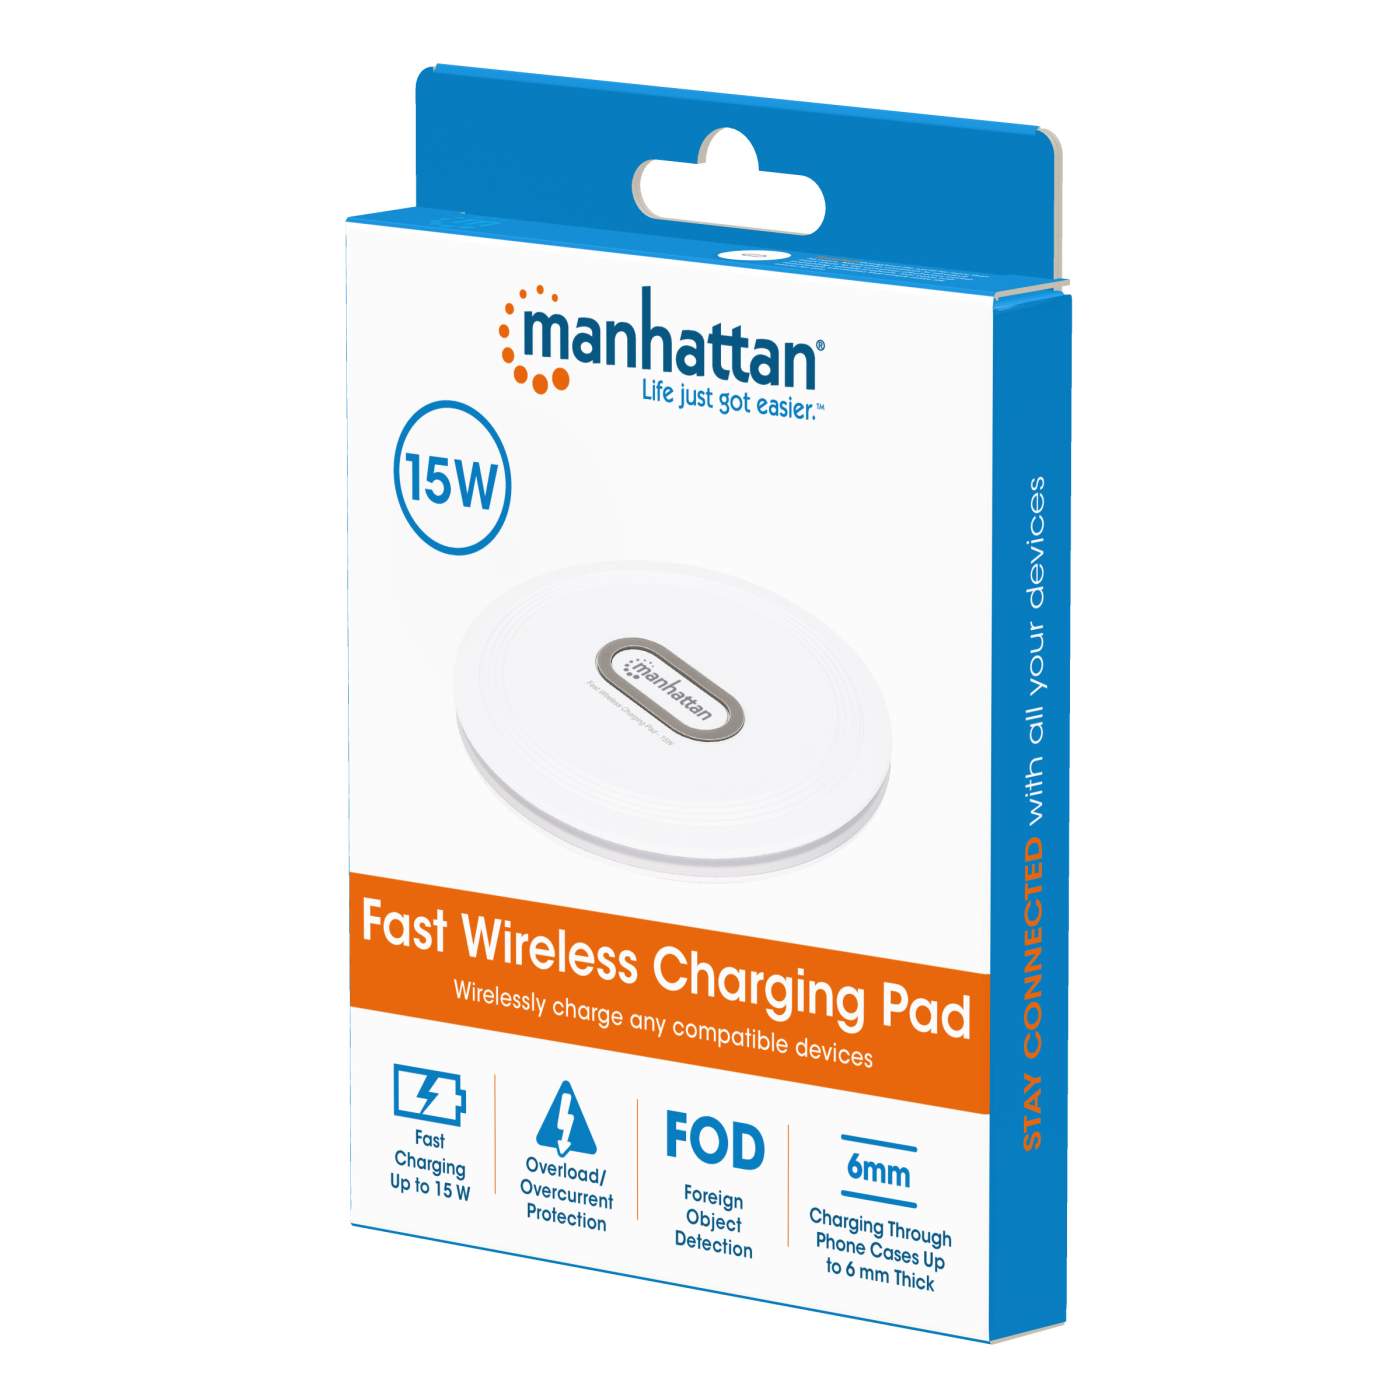 Manhattan Fast Wireless Charging Pad - 15 W (406024)